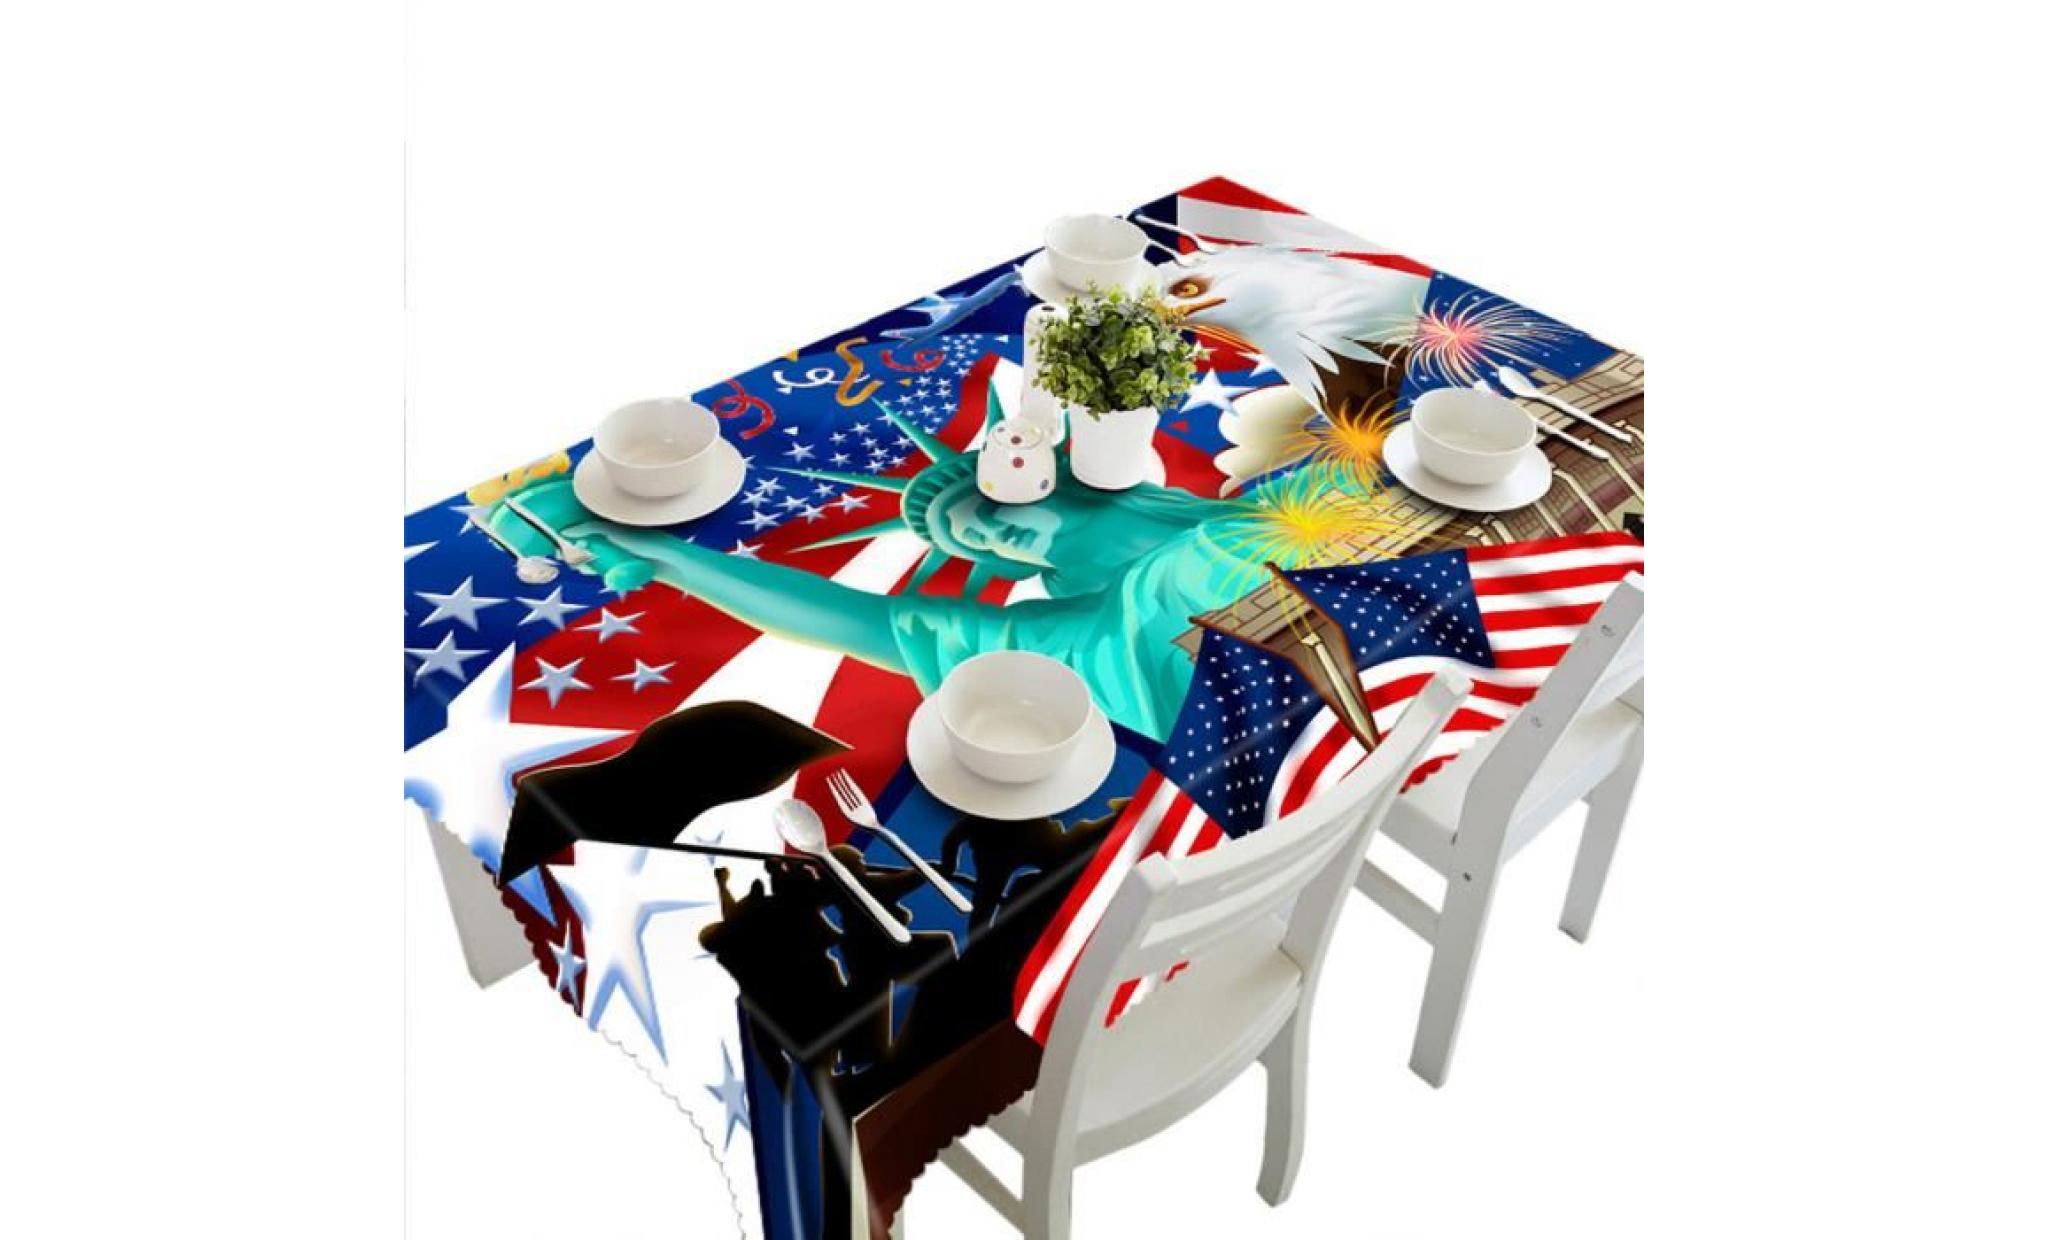 3d multi table à manger fonctionnelle tissu pour picnic party i nappe_ccx123